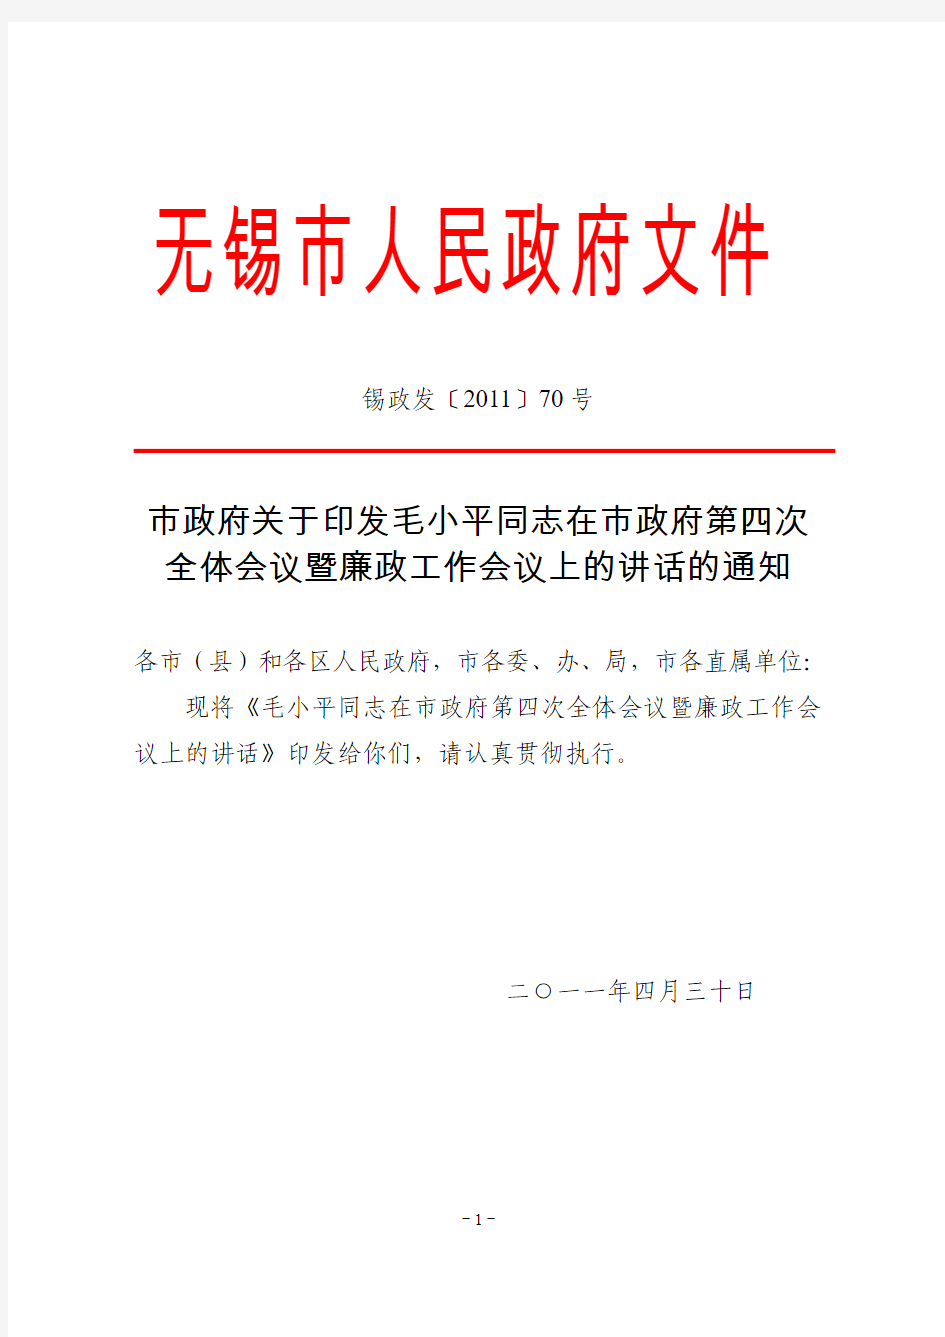 毛小平同志在市政府第四次全体会议暨廉政工作会议上的讲话